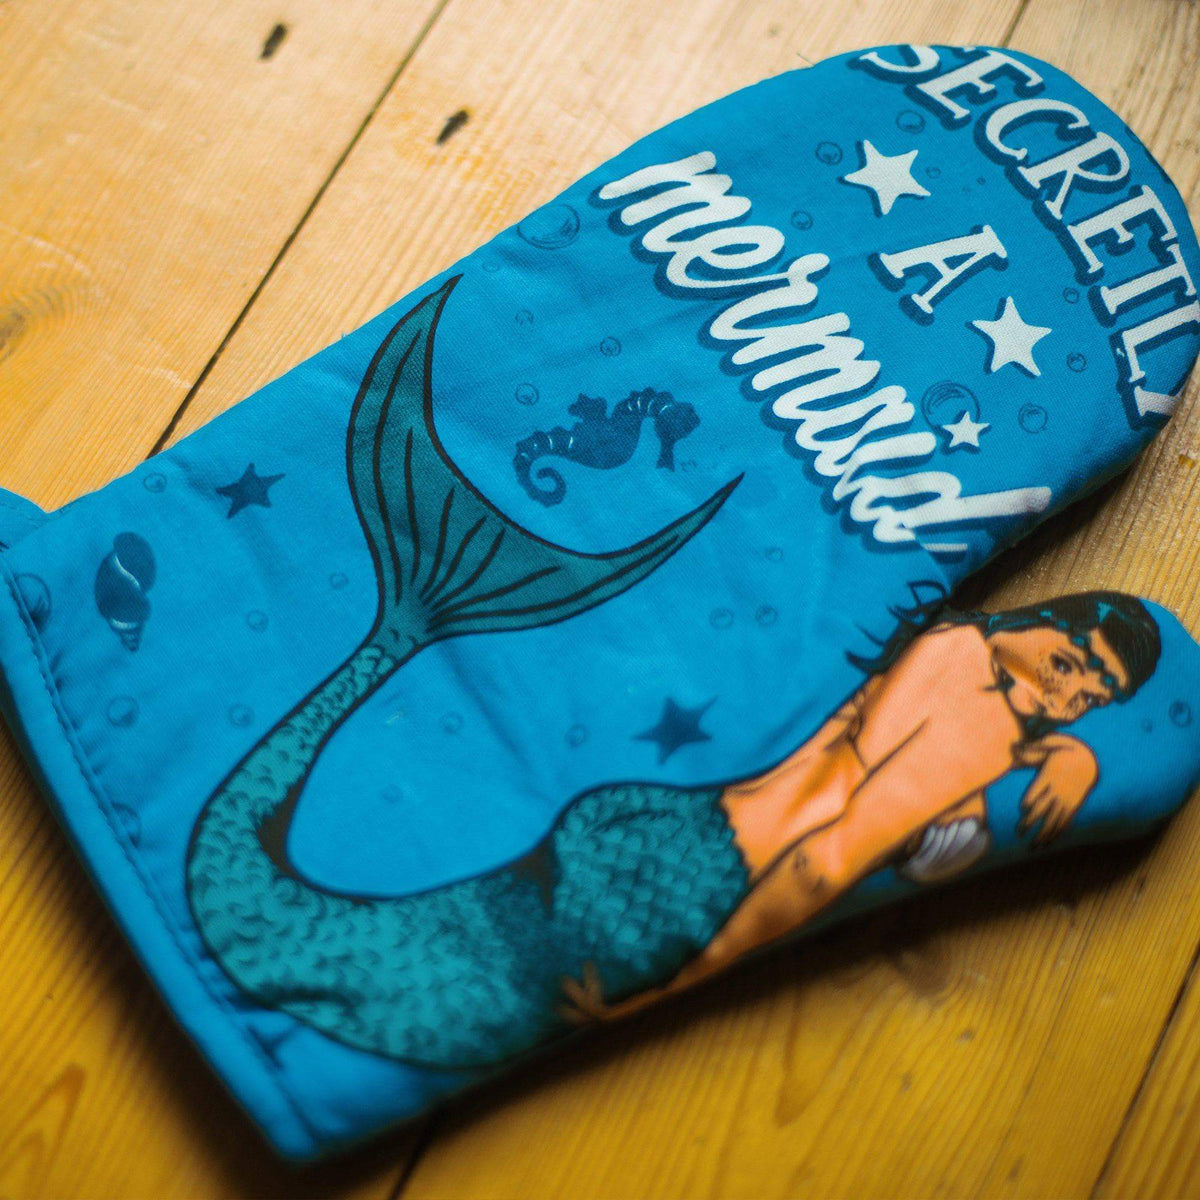 Secretly A Mermaid - Crazy Dog T-Shirts